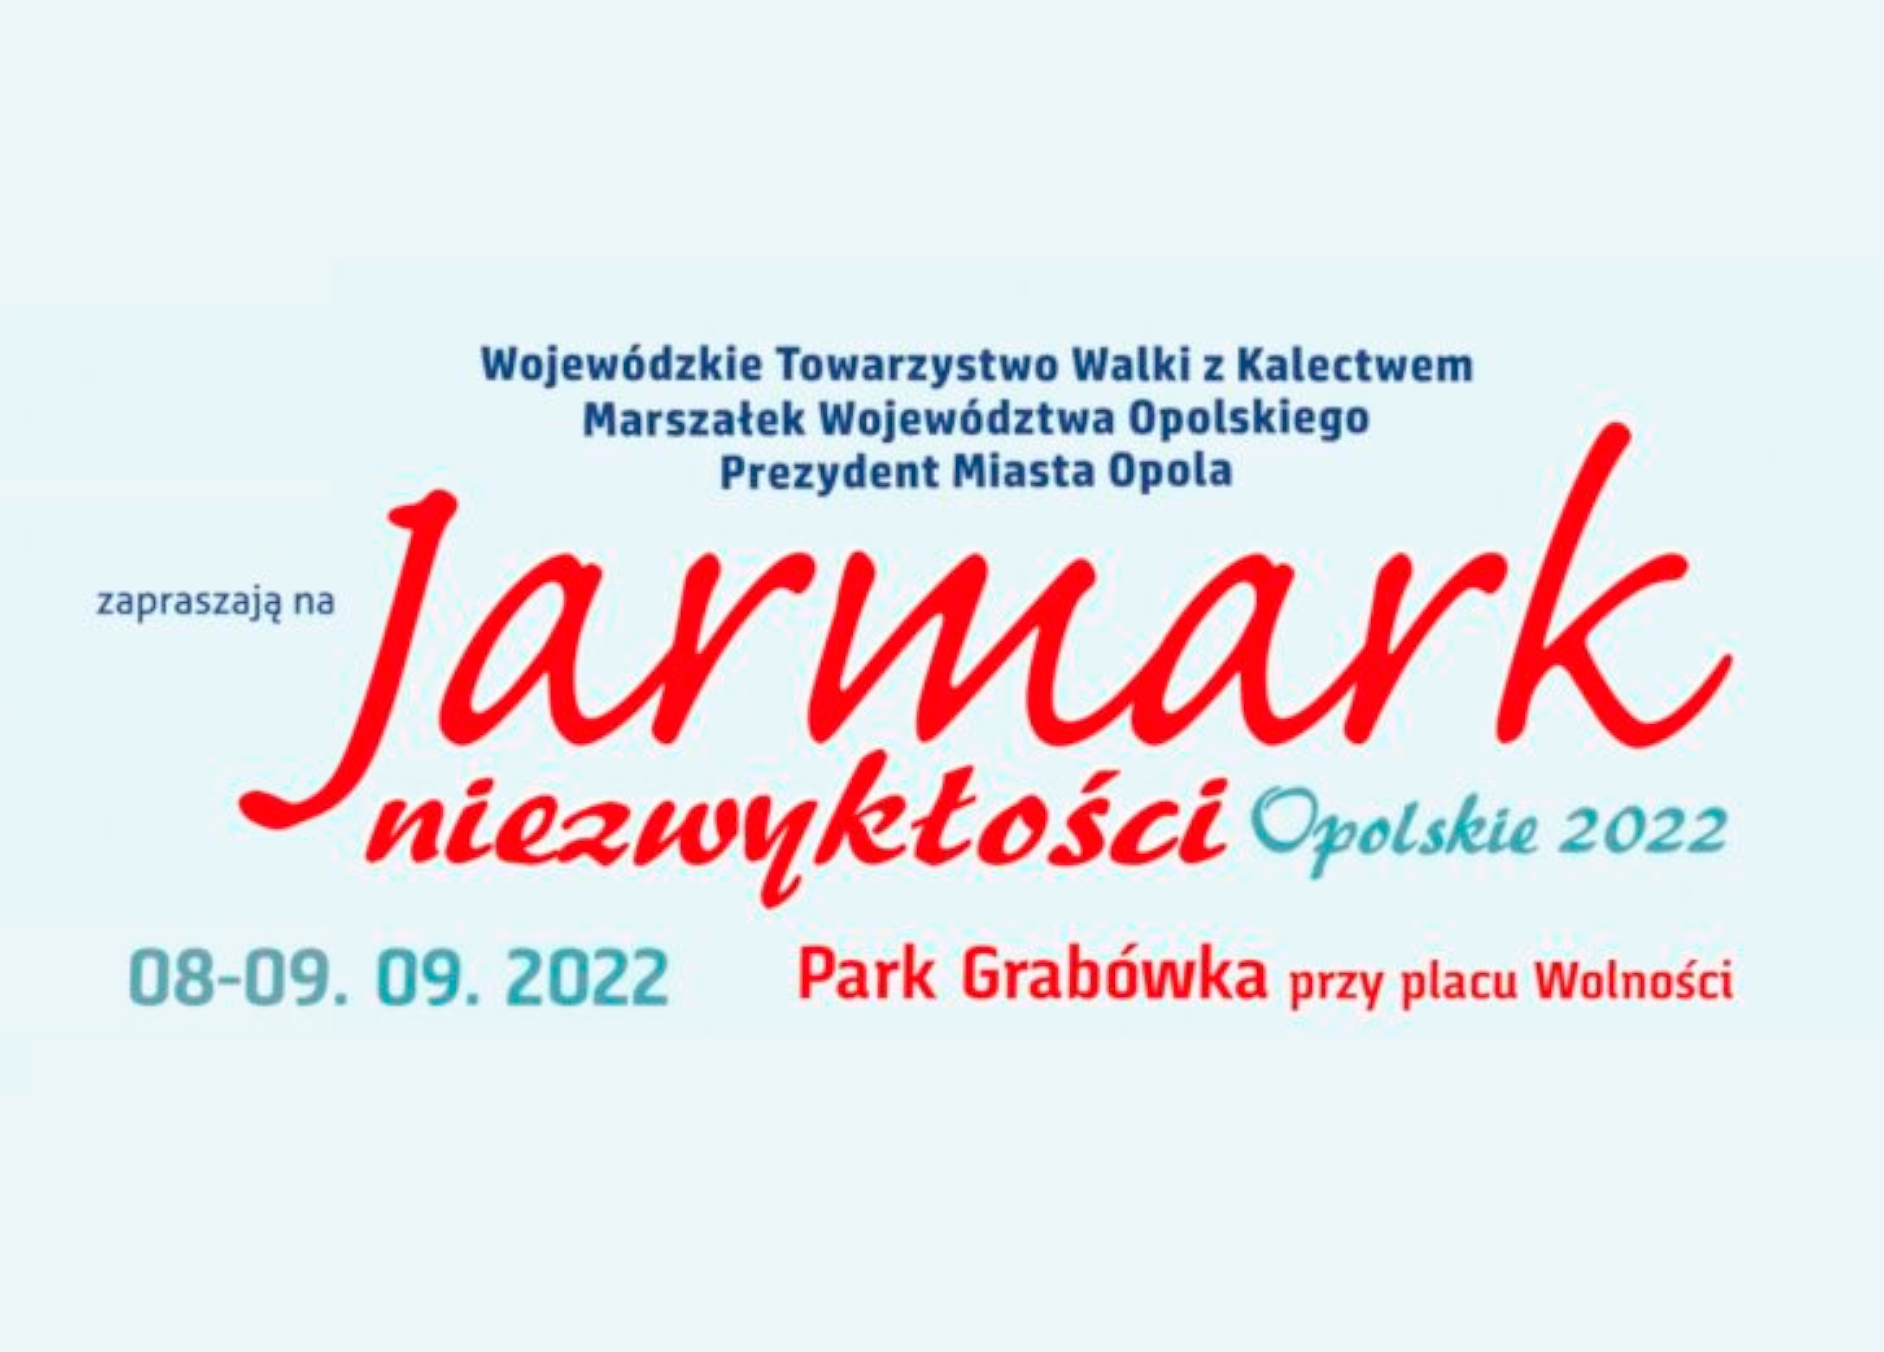 Jarmark niezwykłości Opolskie 2022